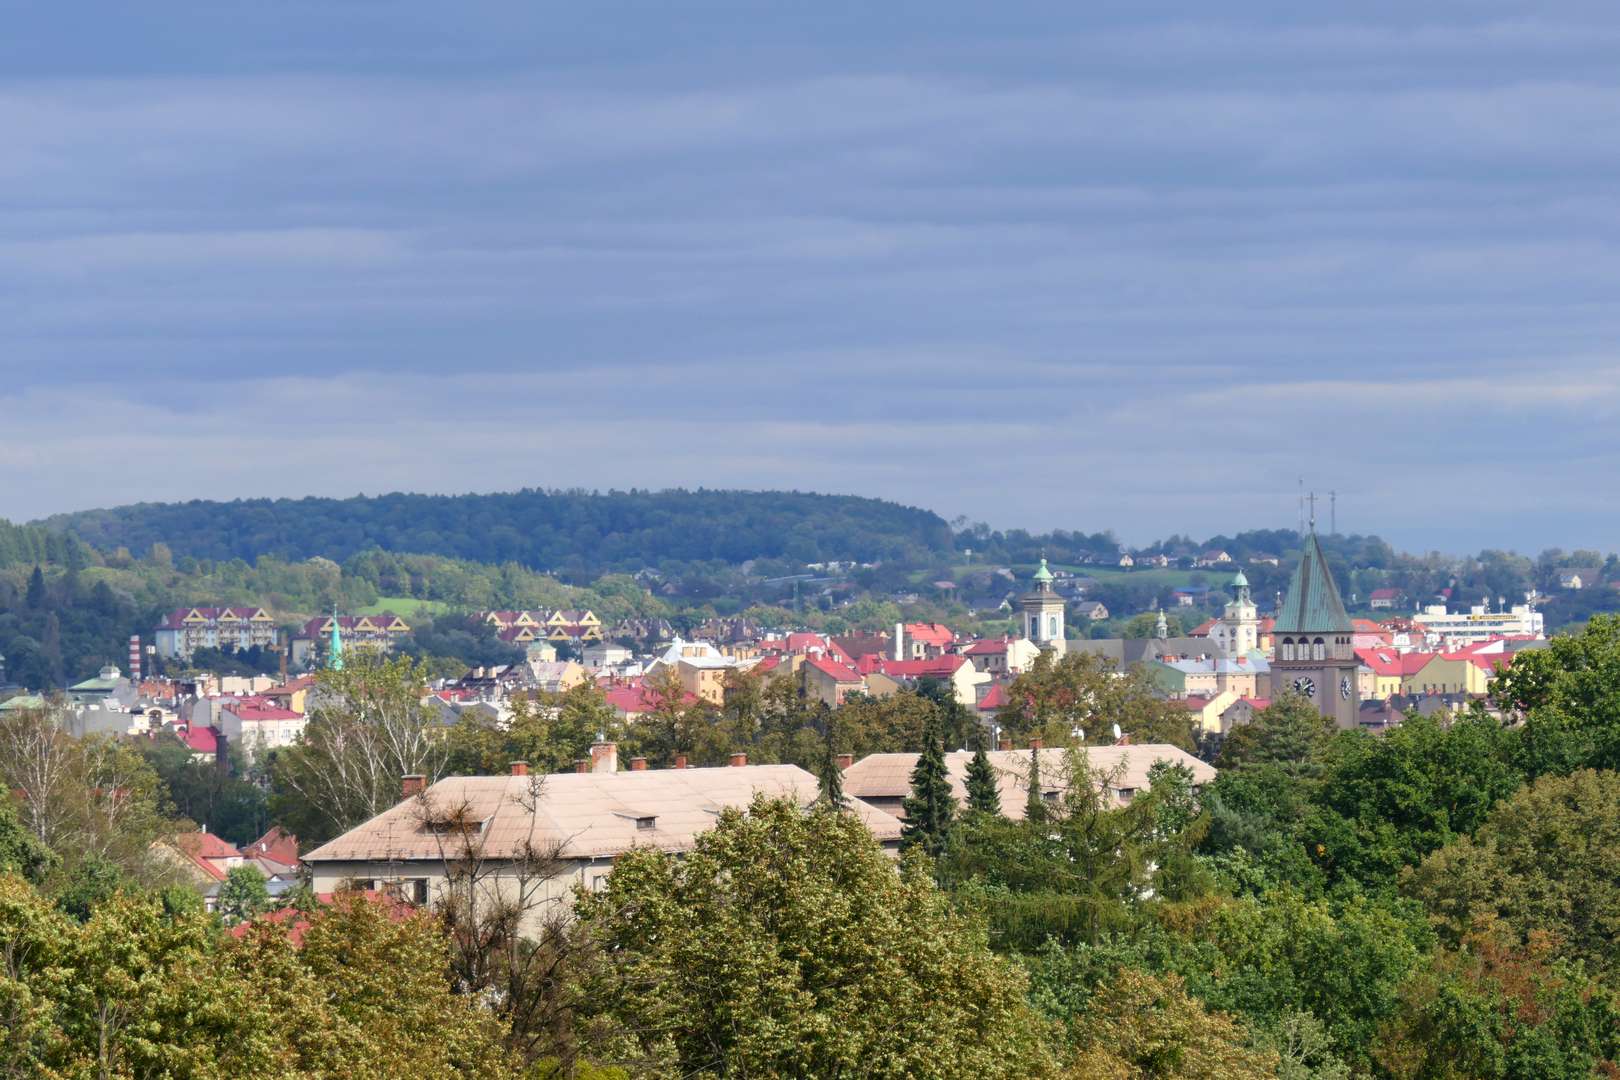 Wjeżdżając do Czeskiego Cieszyna od strony zachodniej szczególnie wyraźnie widać, że całe miasto leży w dolinie.